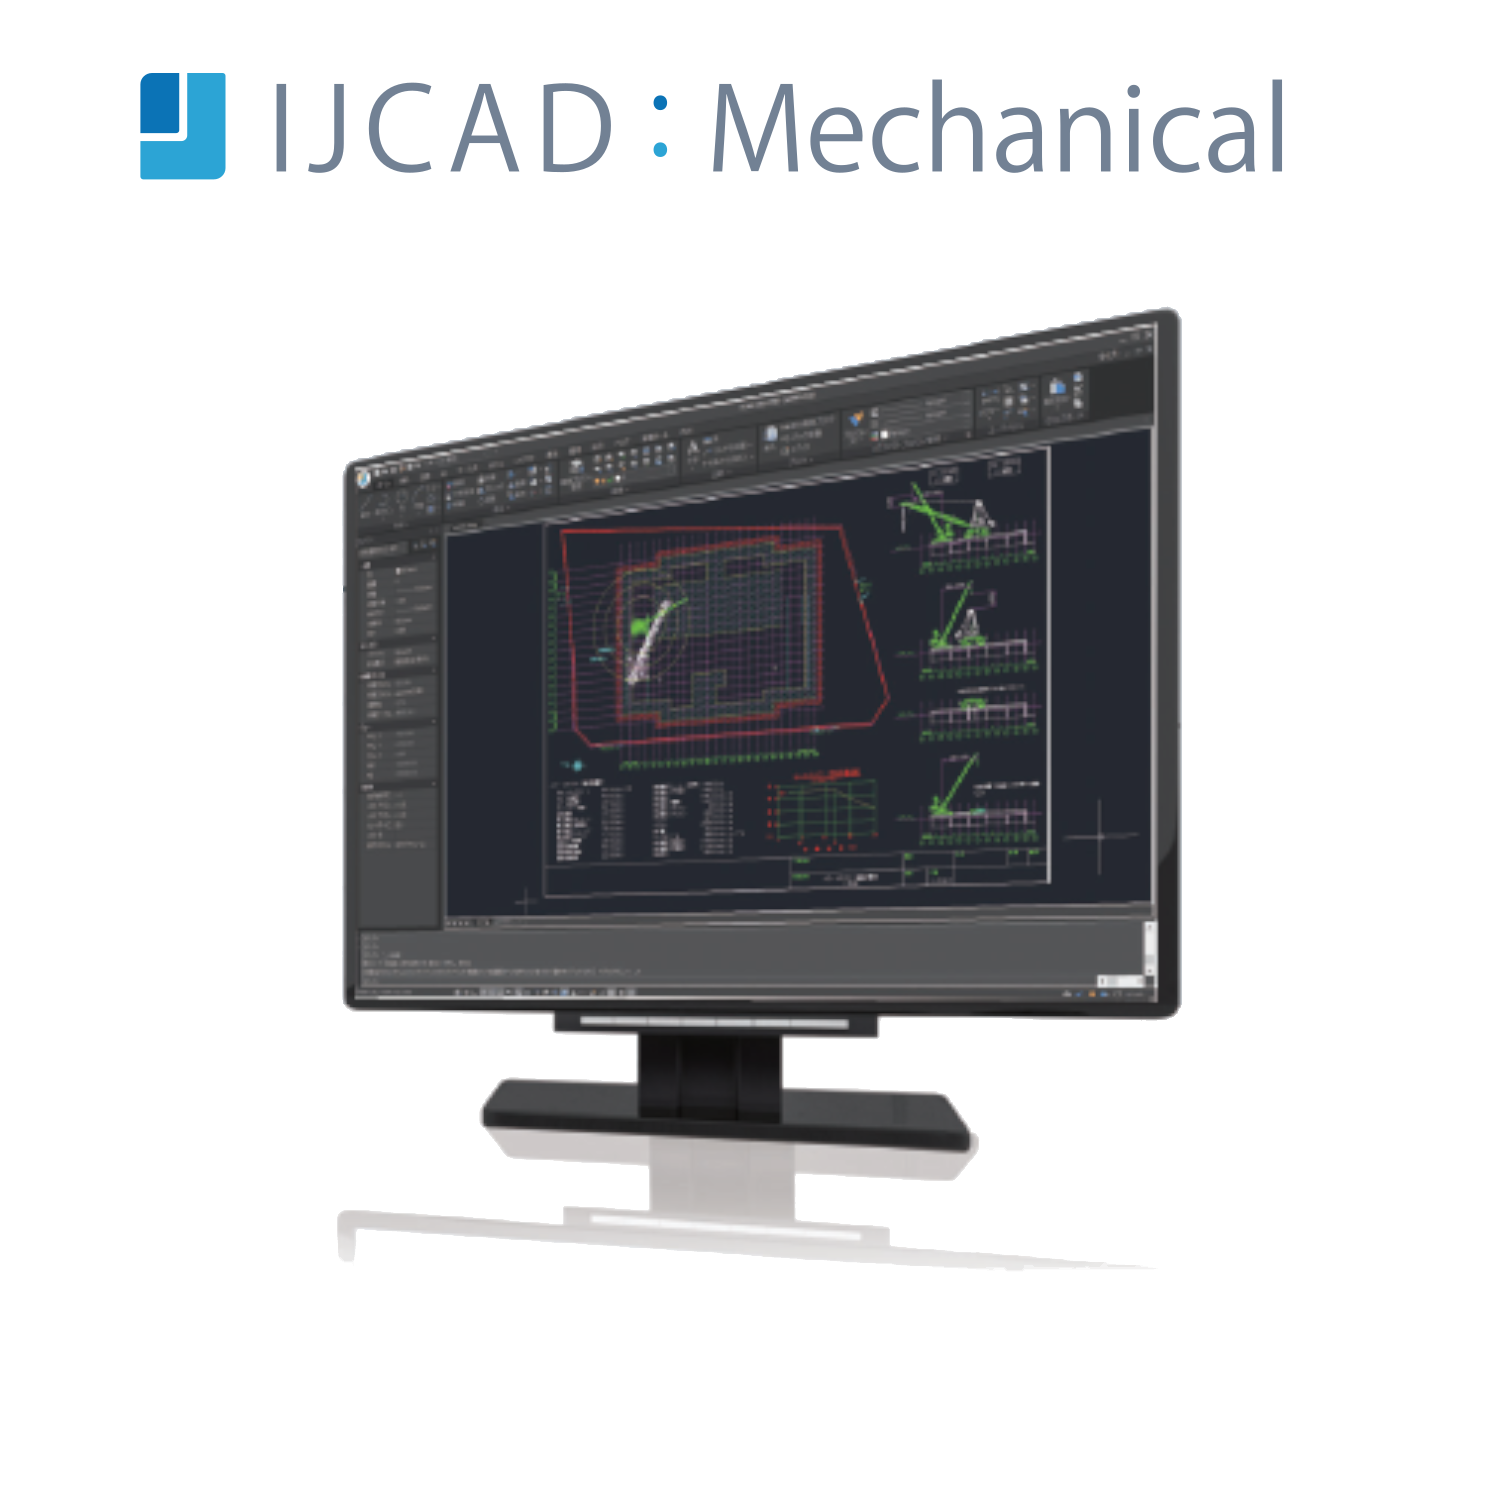 IJCAD Mechanical  シングル 期間ライセンス（1年間）